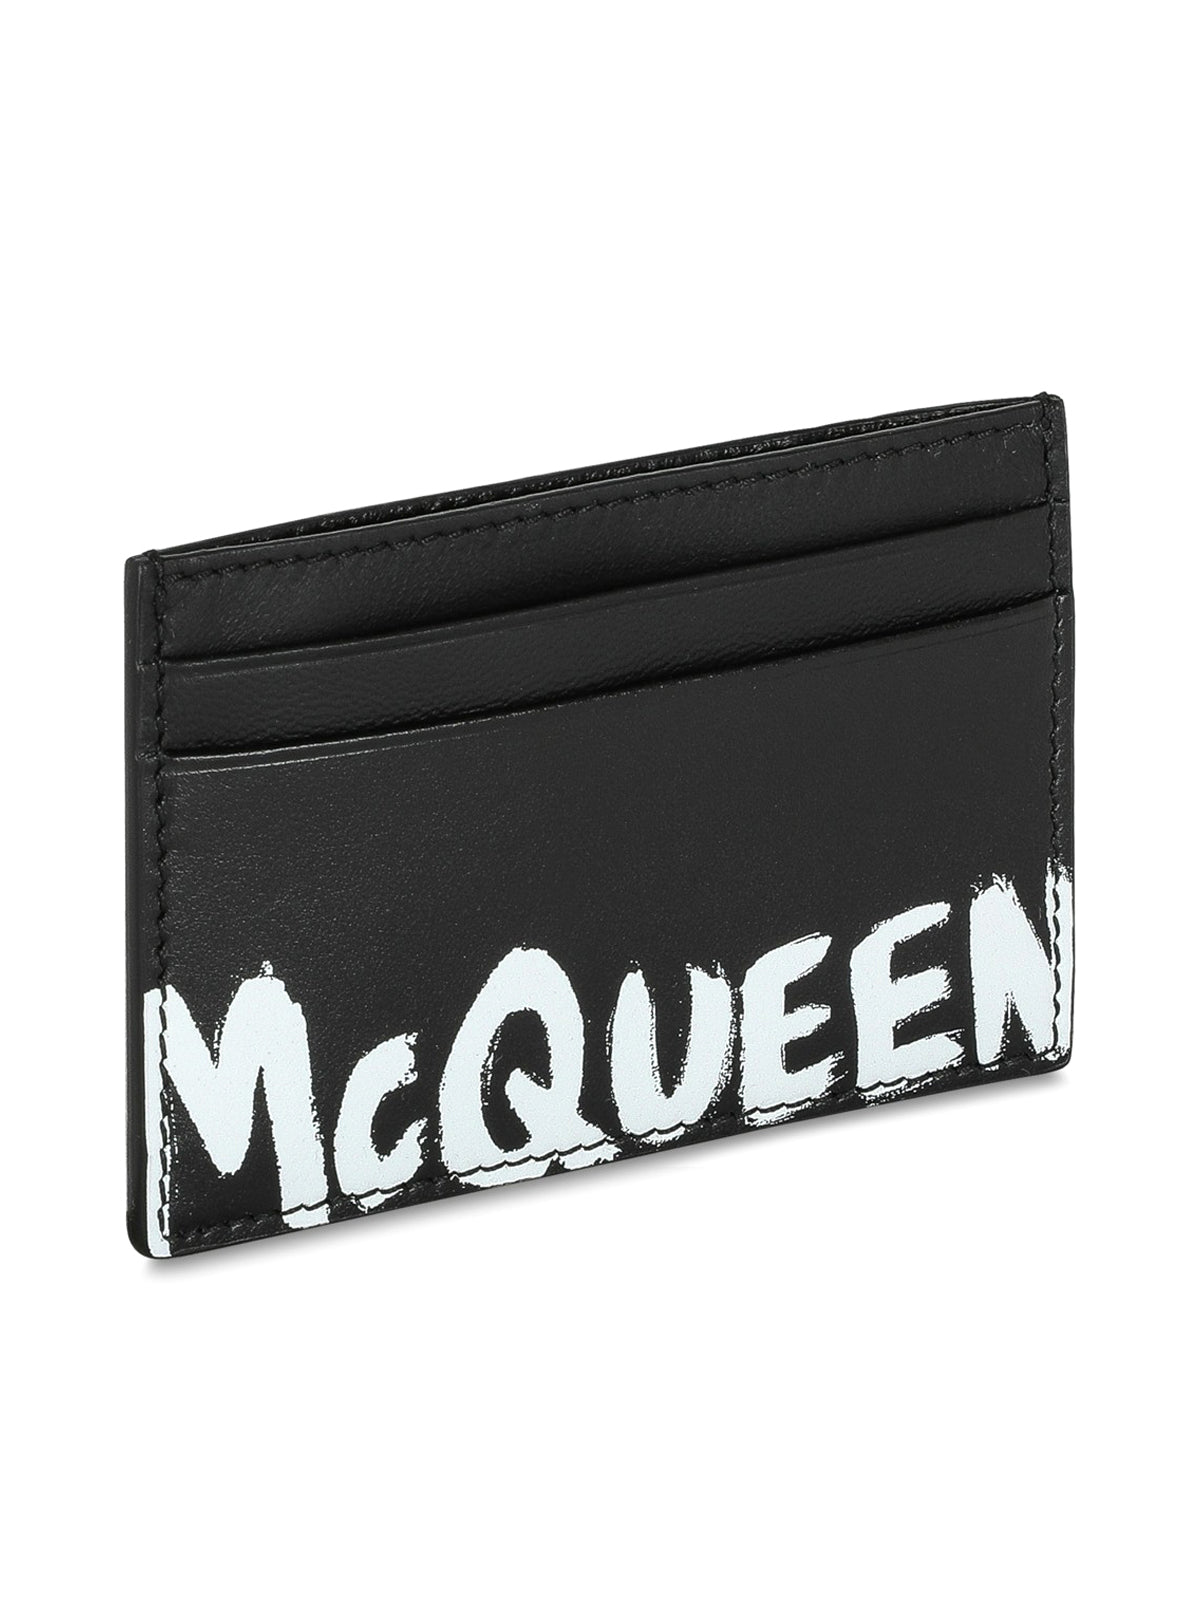 McQueen Graffit credit card holder